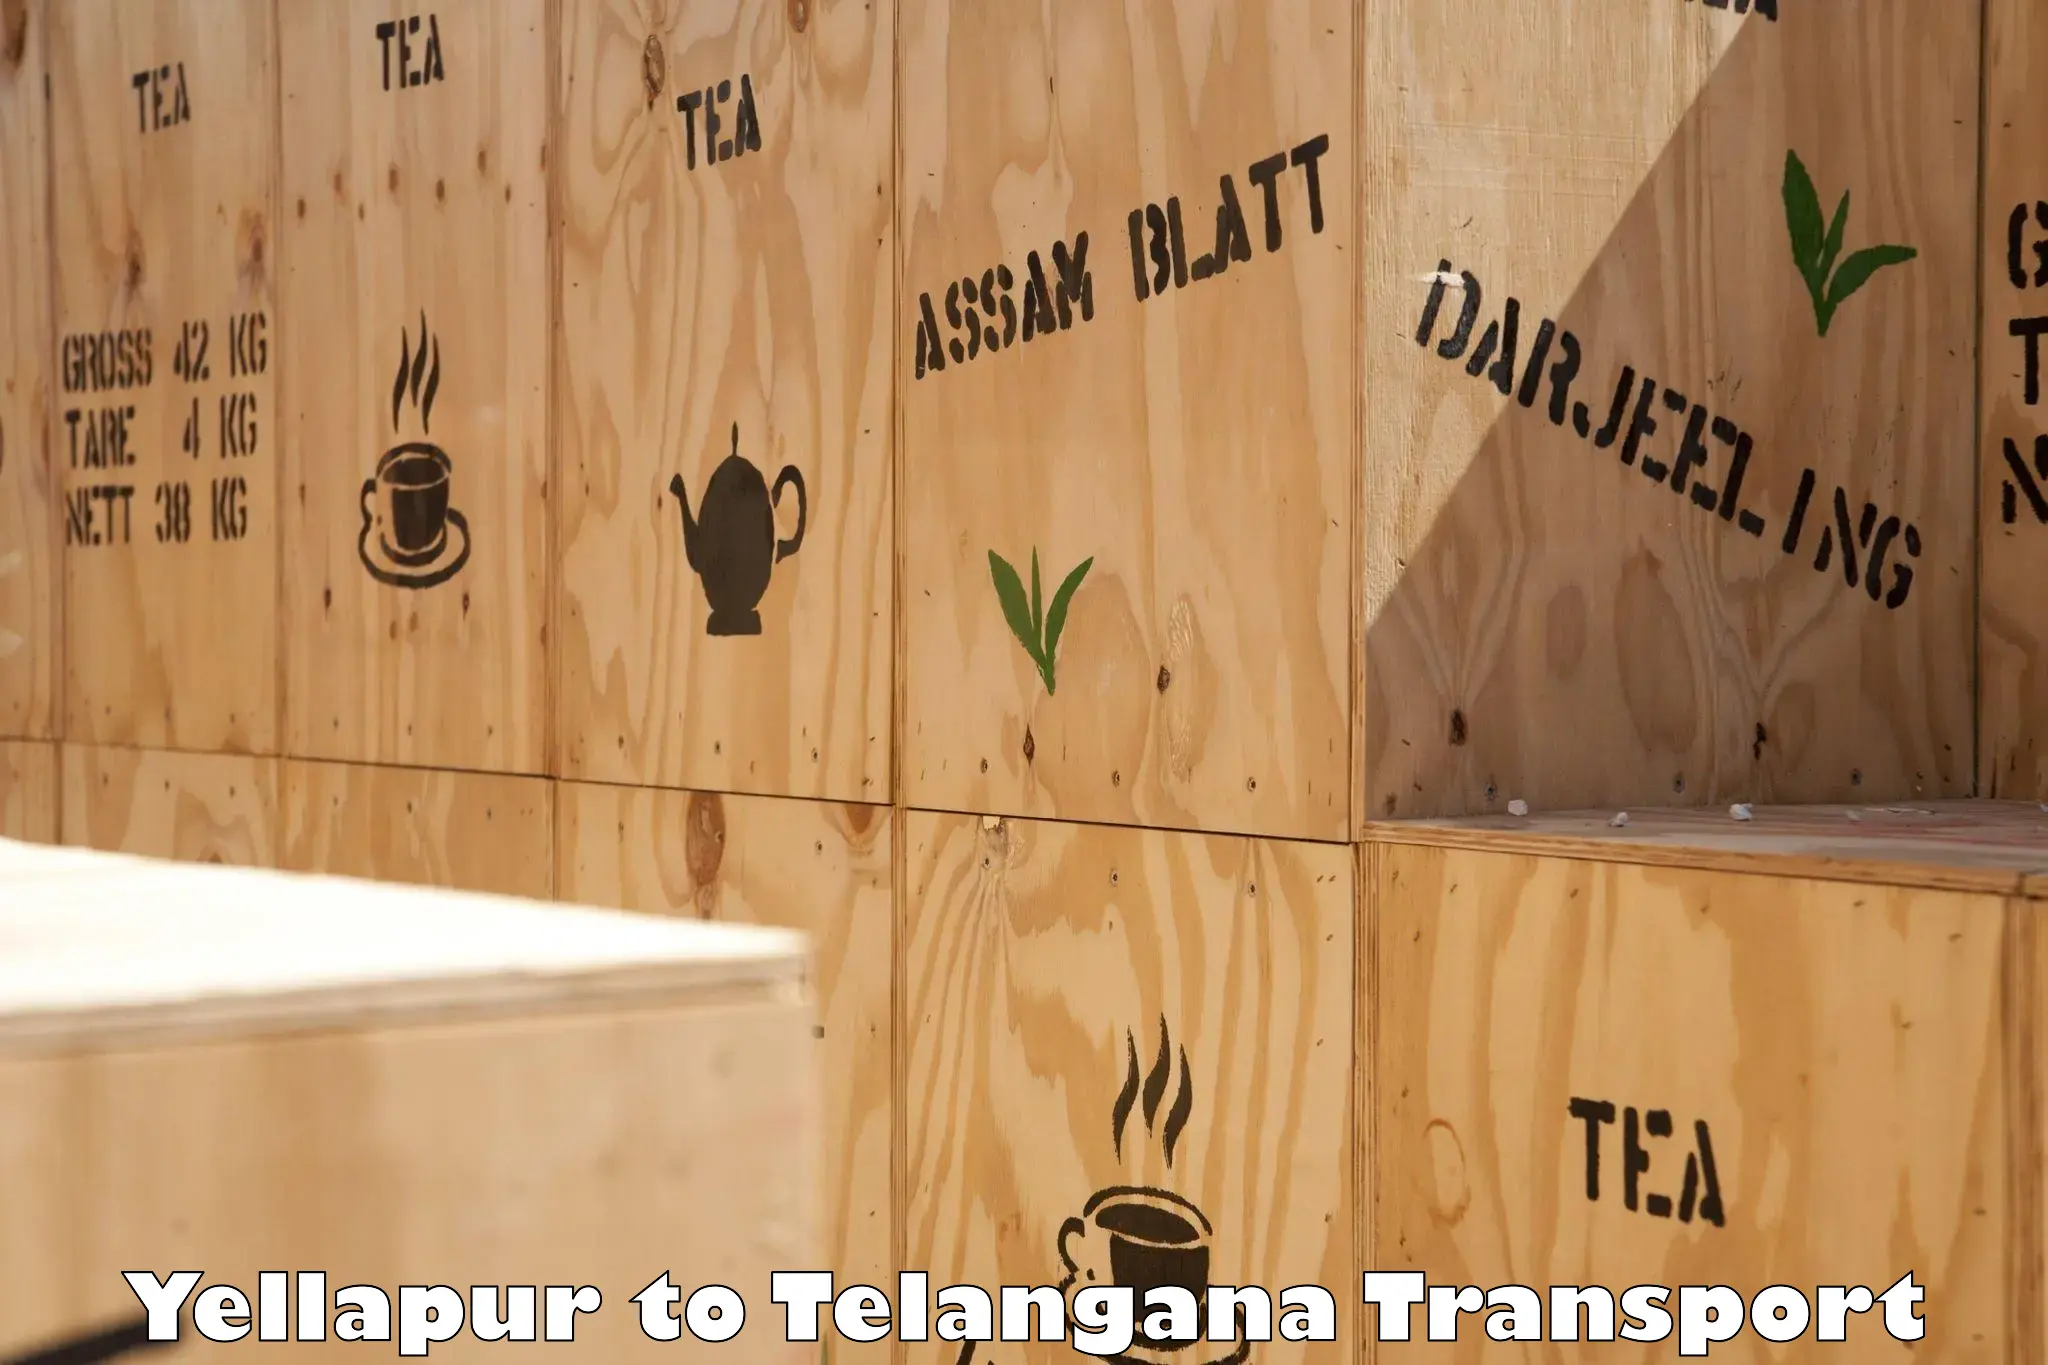 Express transport services Yellapur to Tiryani